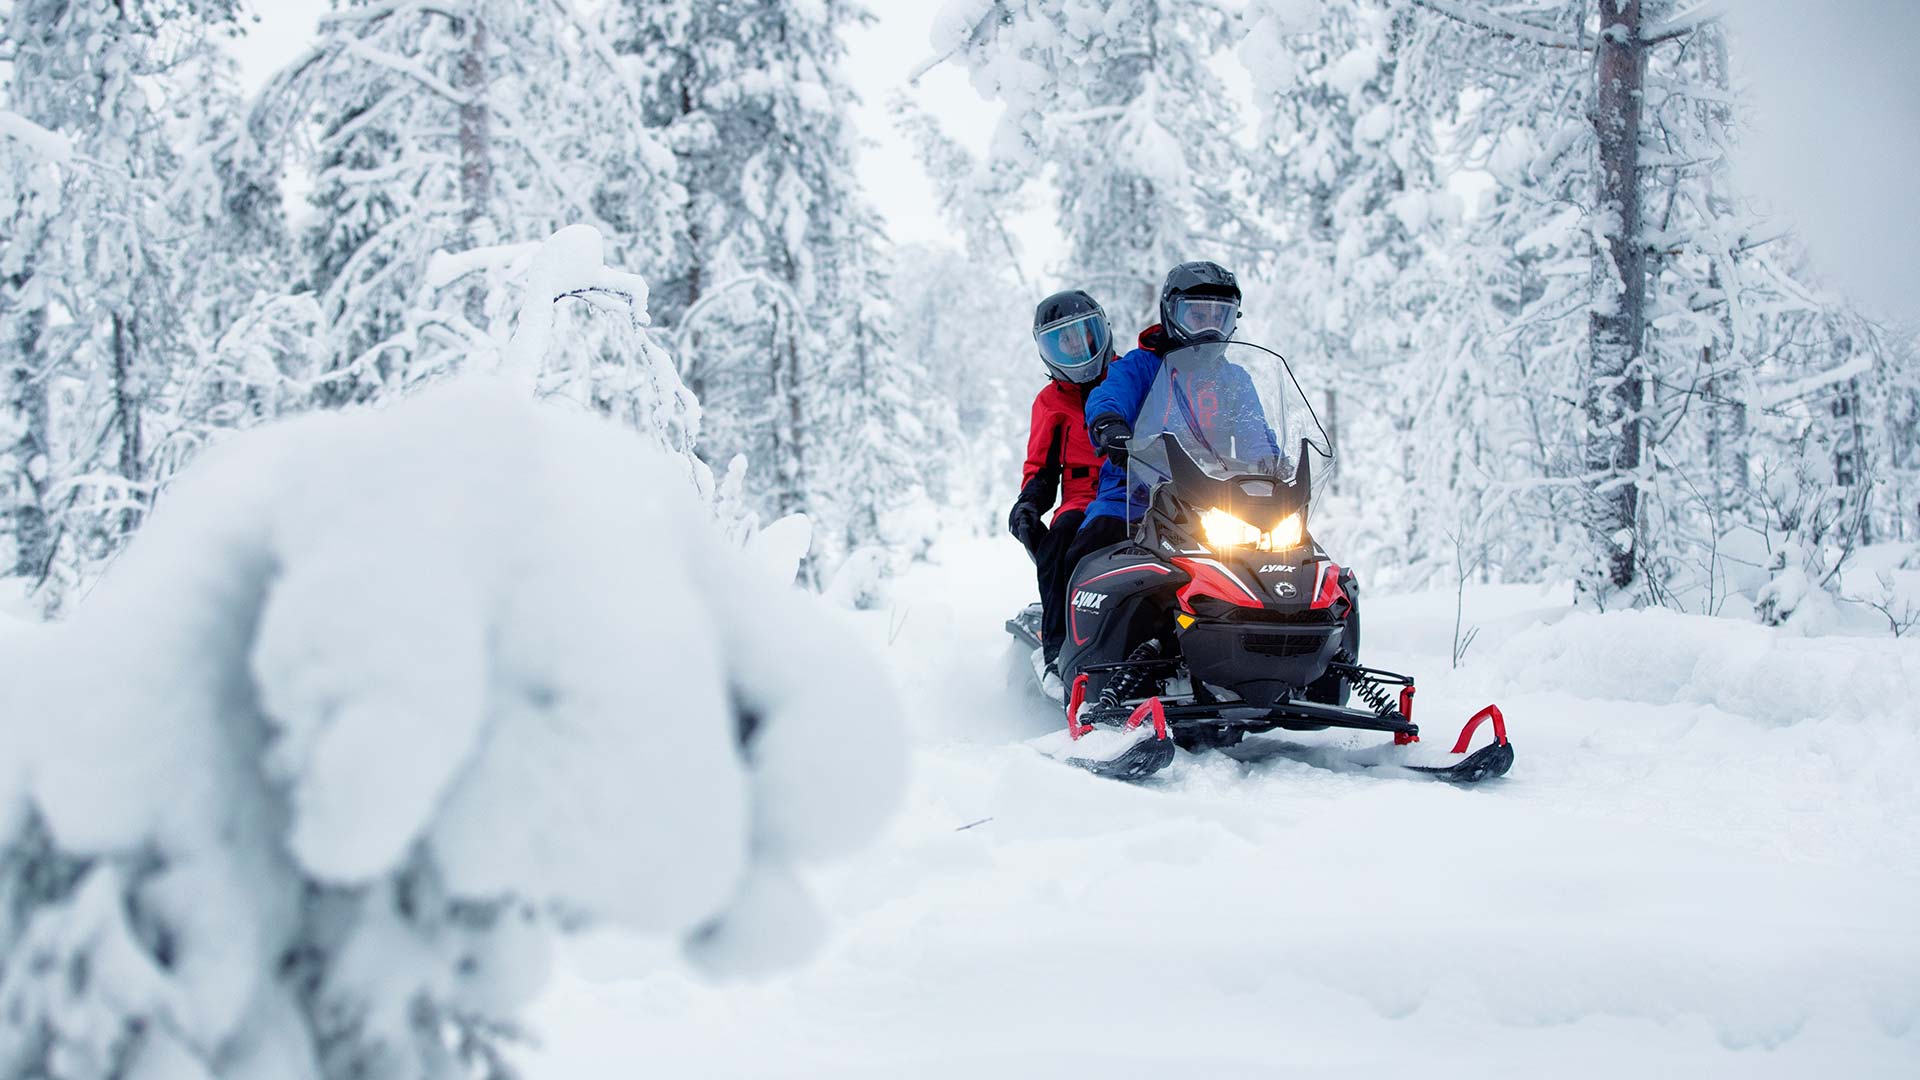 Lynx Adventure LX touring ratsastus polulla lumisessa metsässä